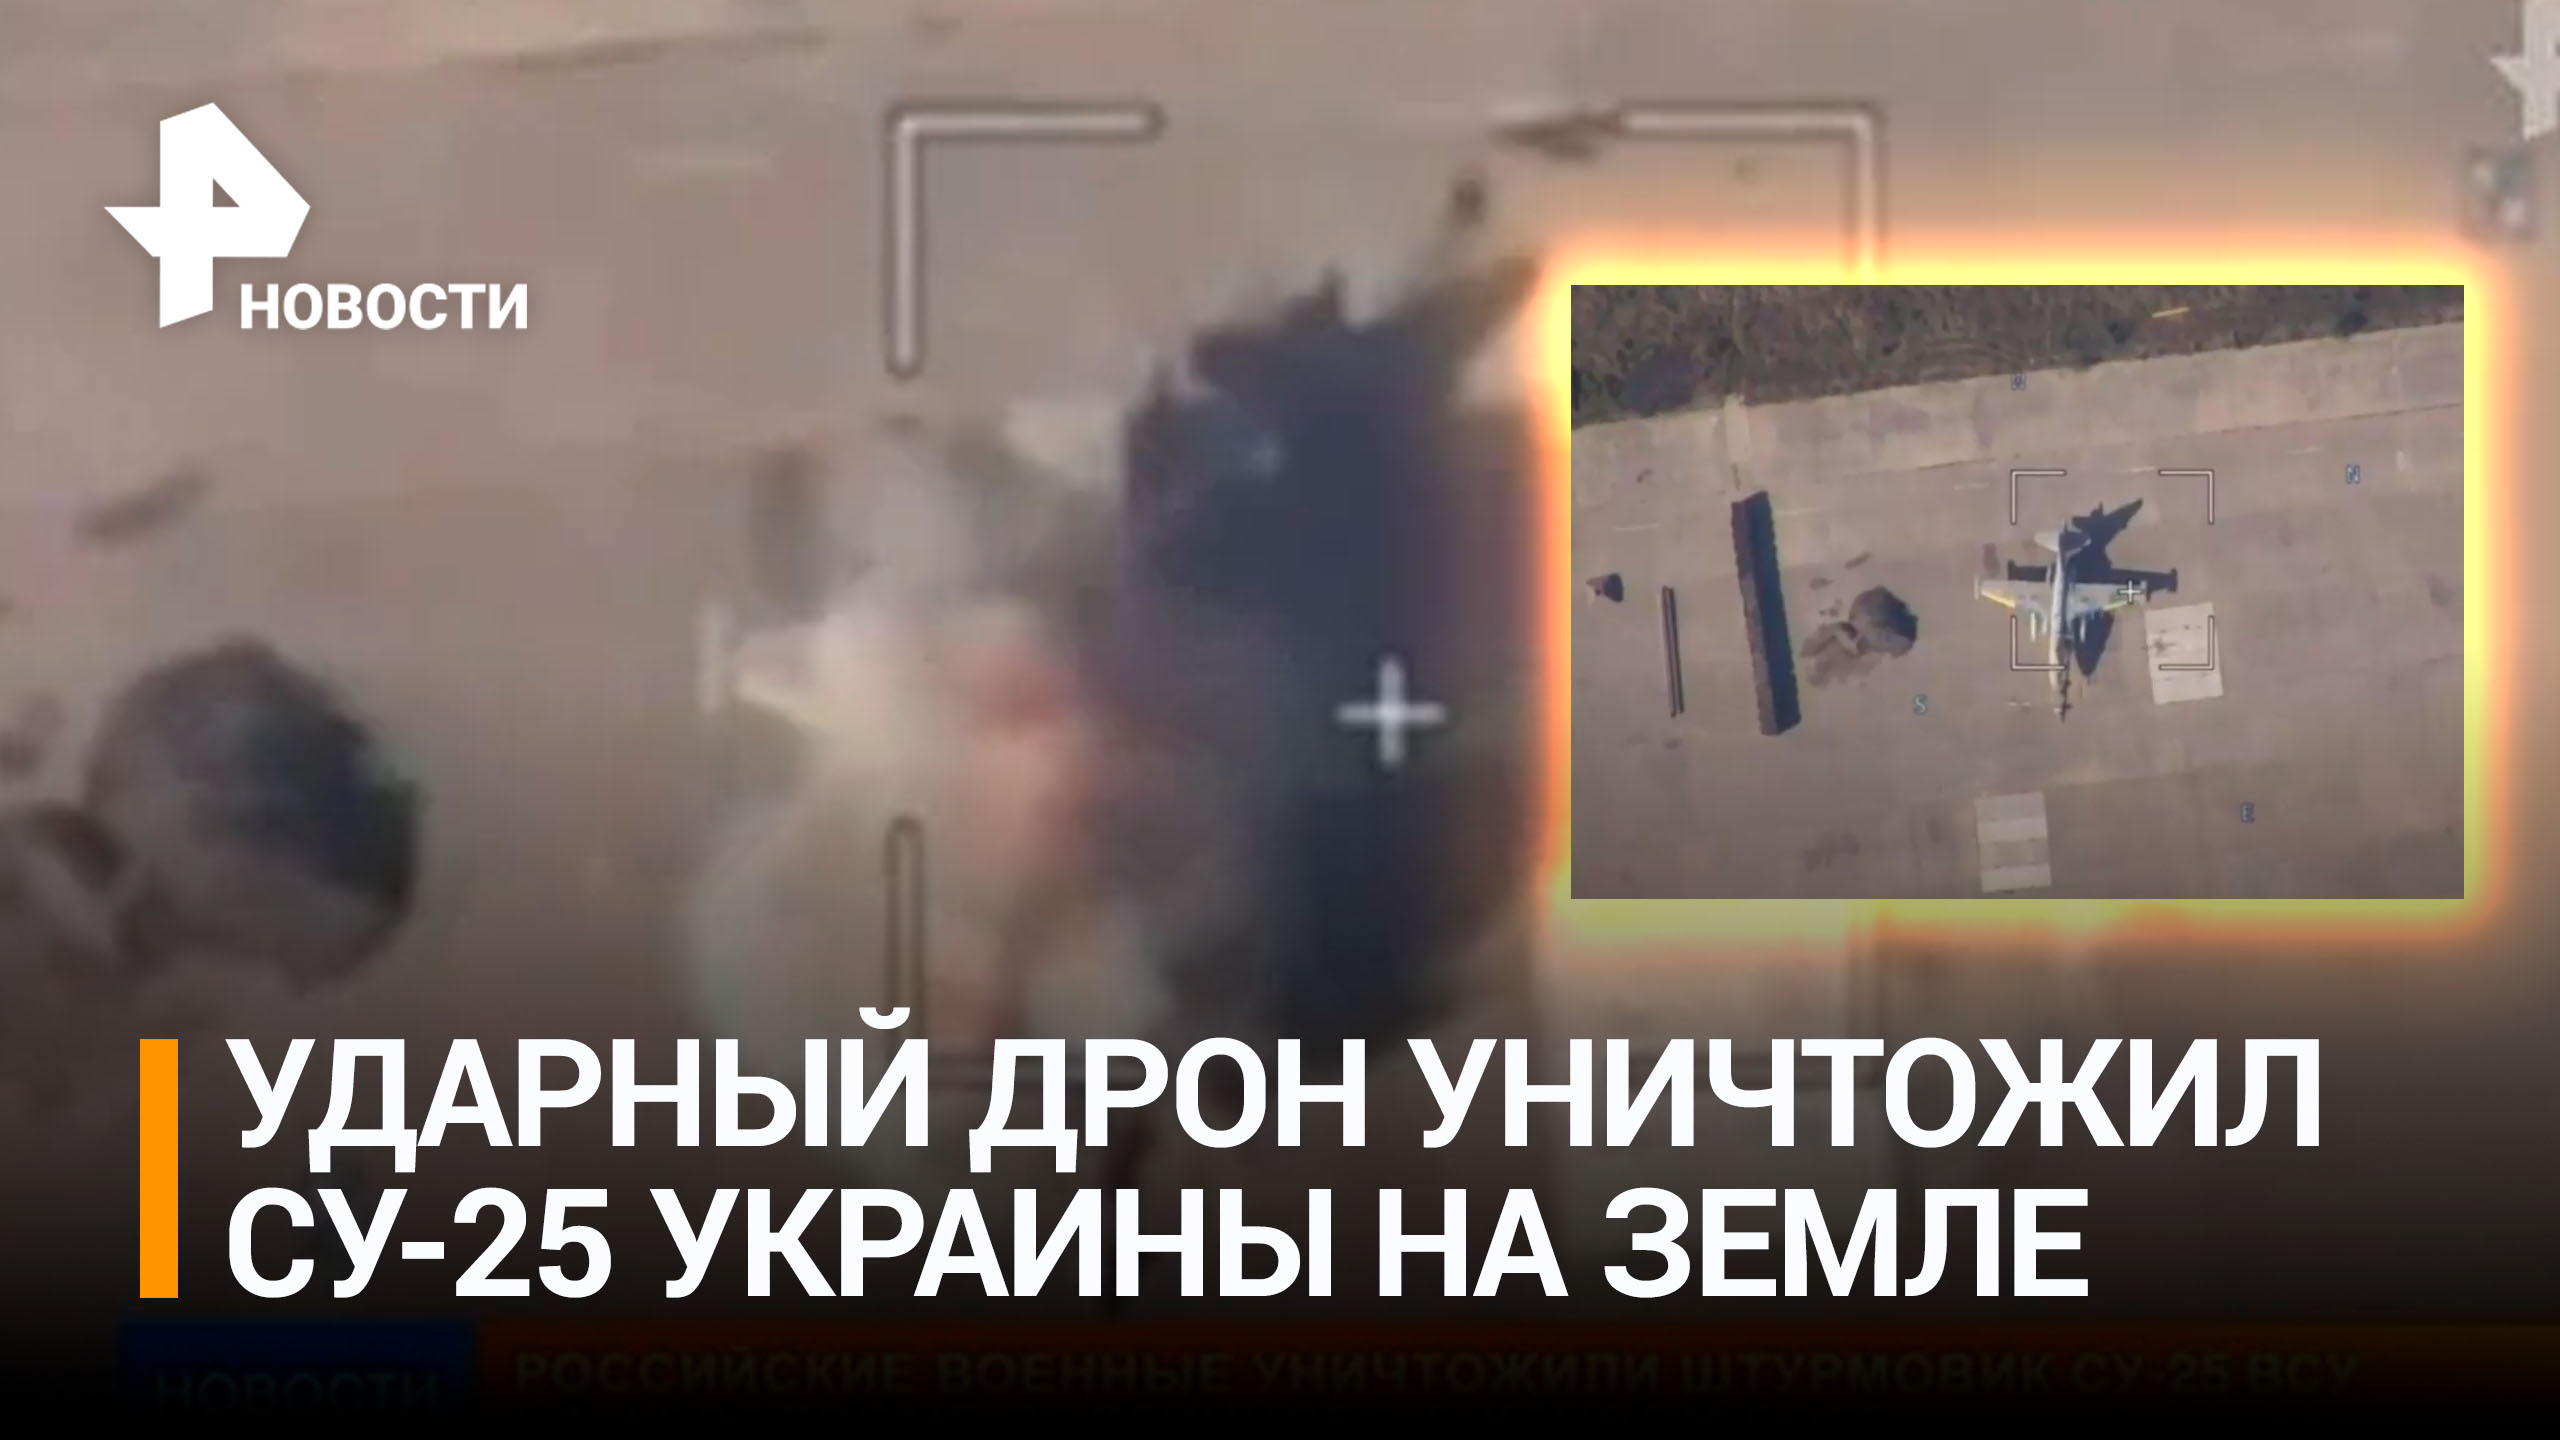 ВС России уничтожили Су-25 на аэродроме в Кривом Роге / РЕН Новости